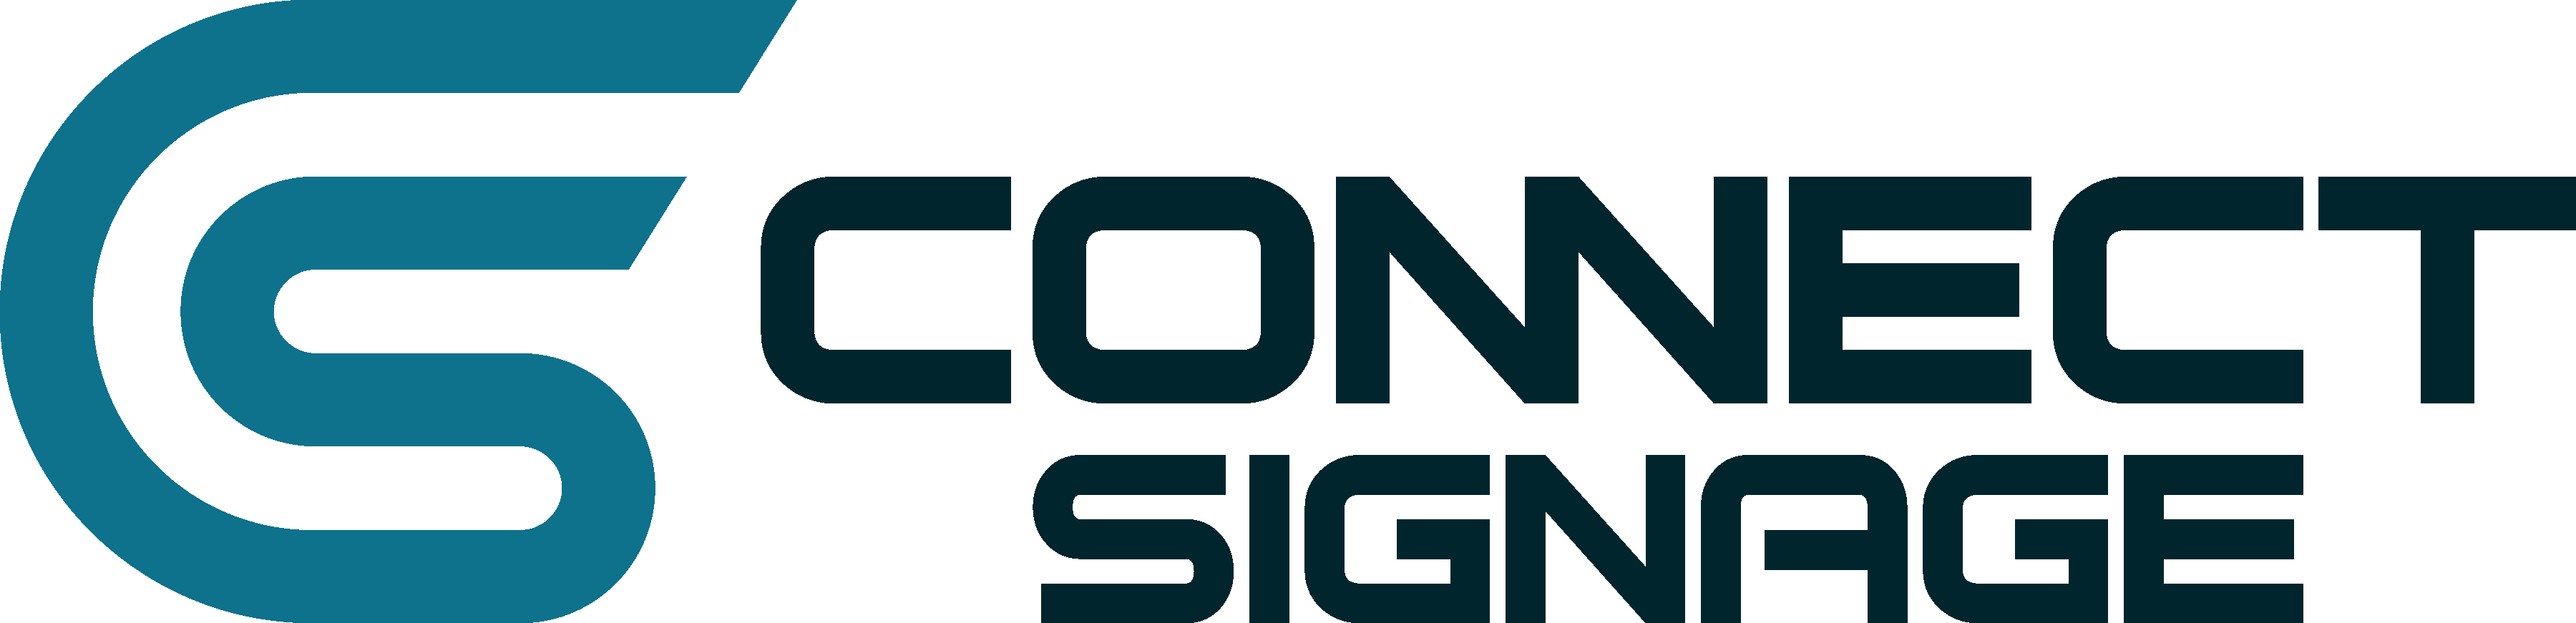 connectSignage logo